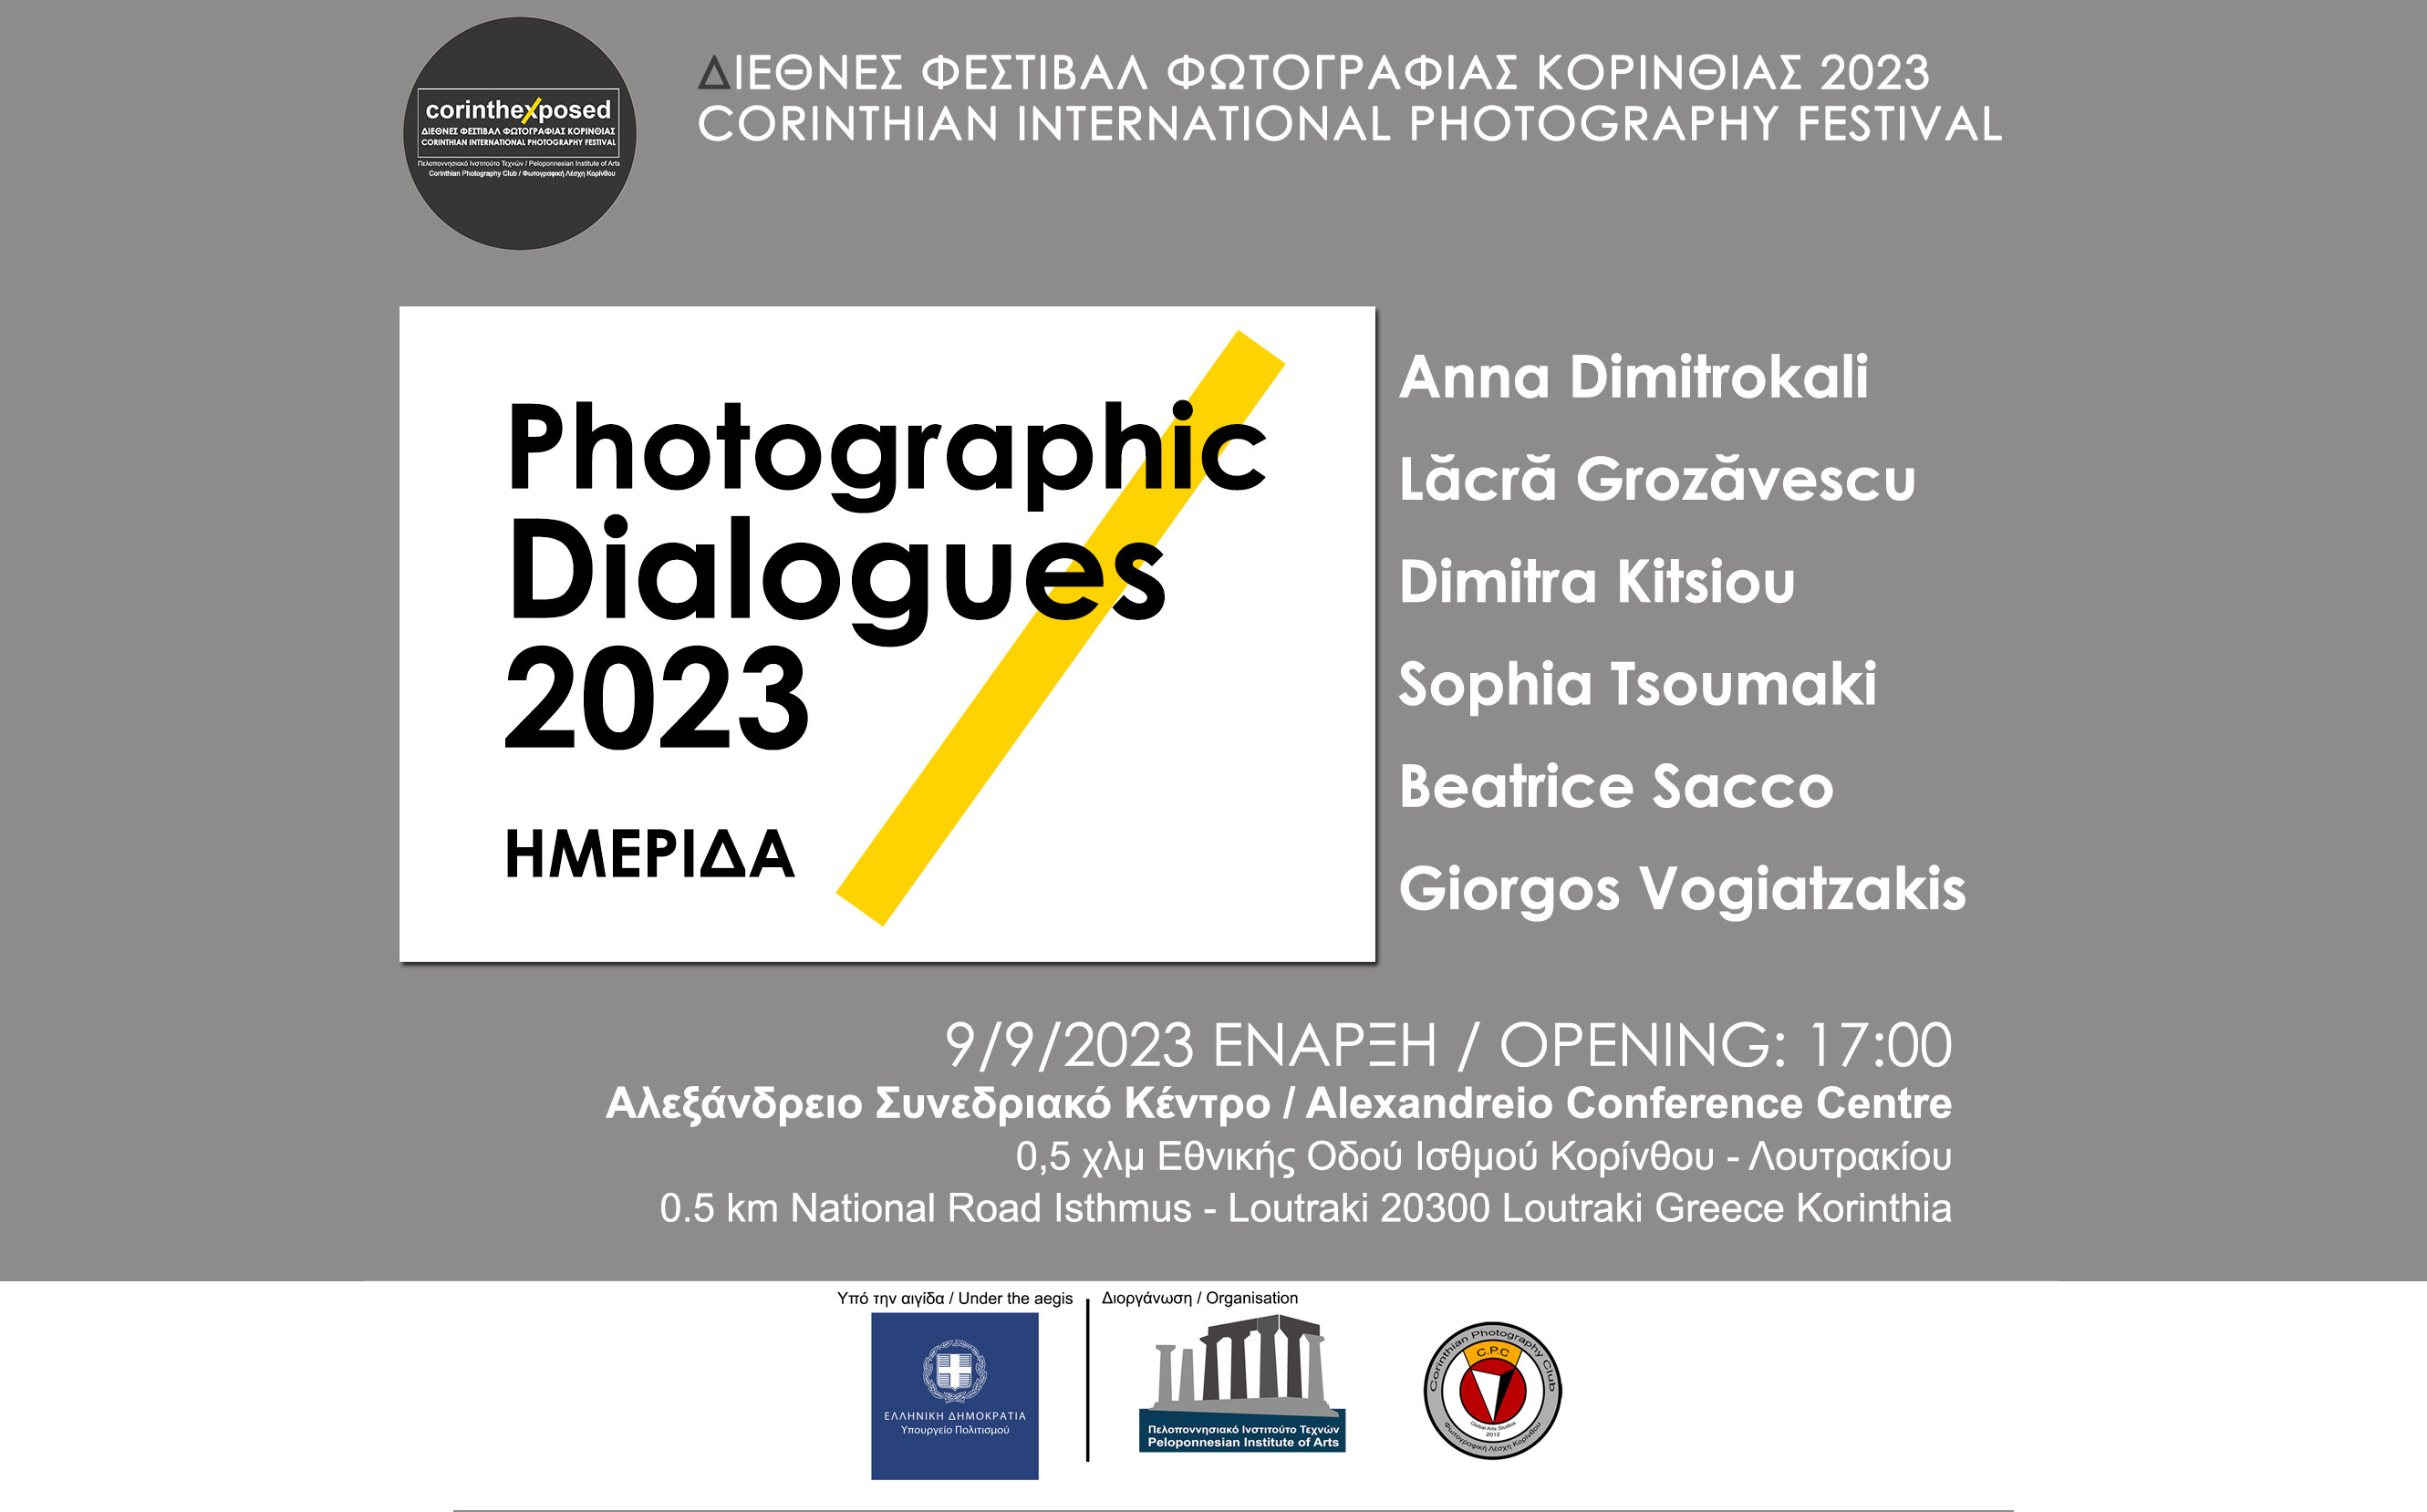 Φωτογραφικοί διάλογοι 2023 - Αλεξάνδρειο Συνεδριακό Κέντρο - 9/9/2023